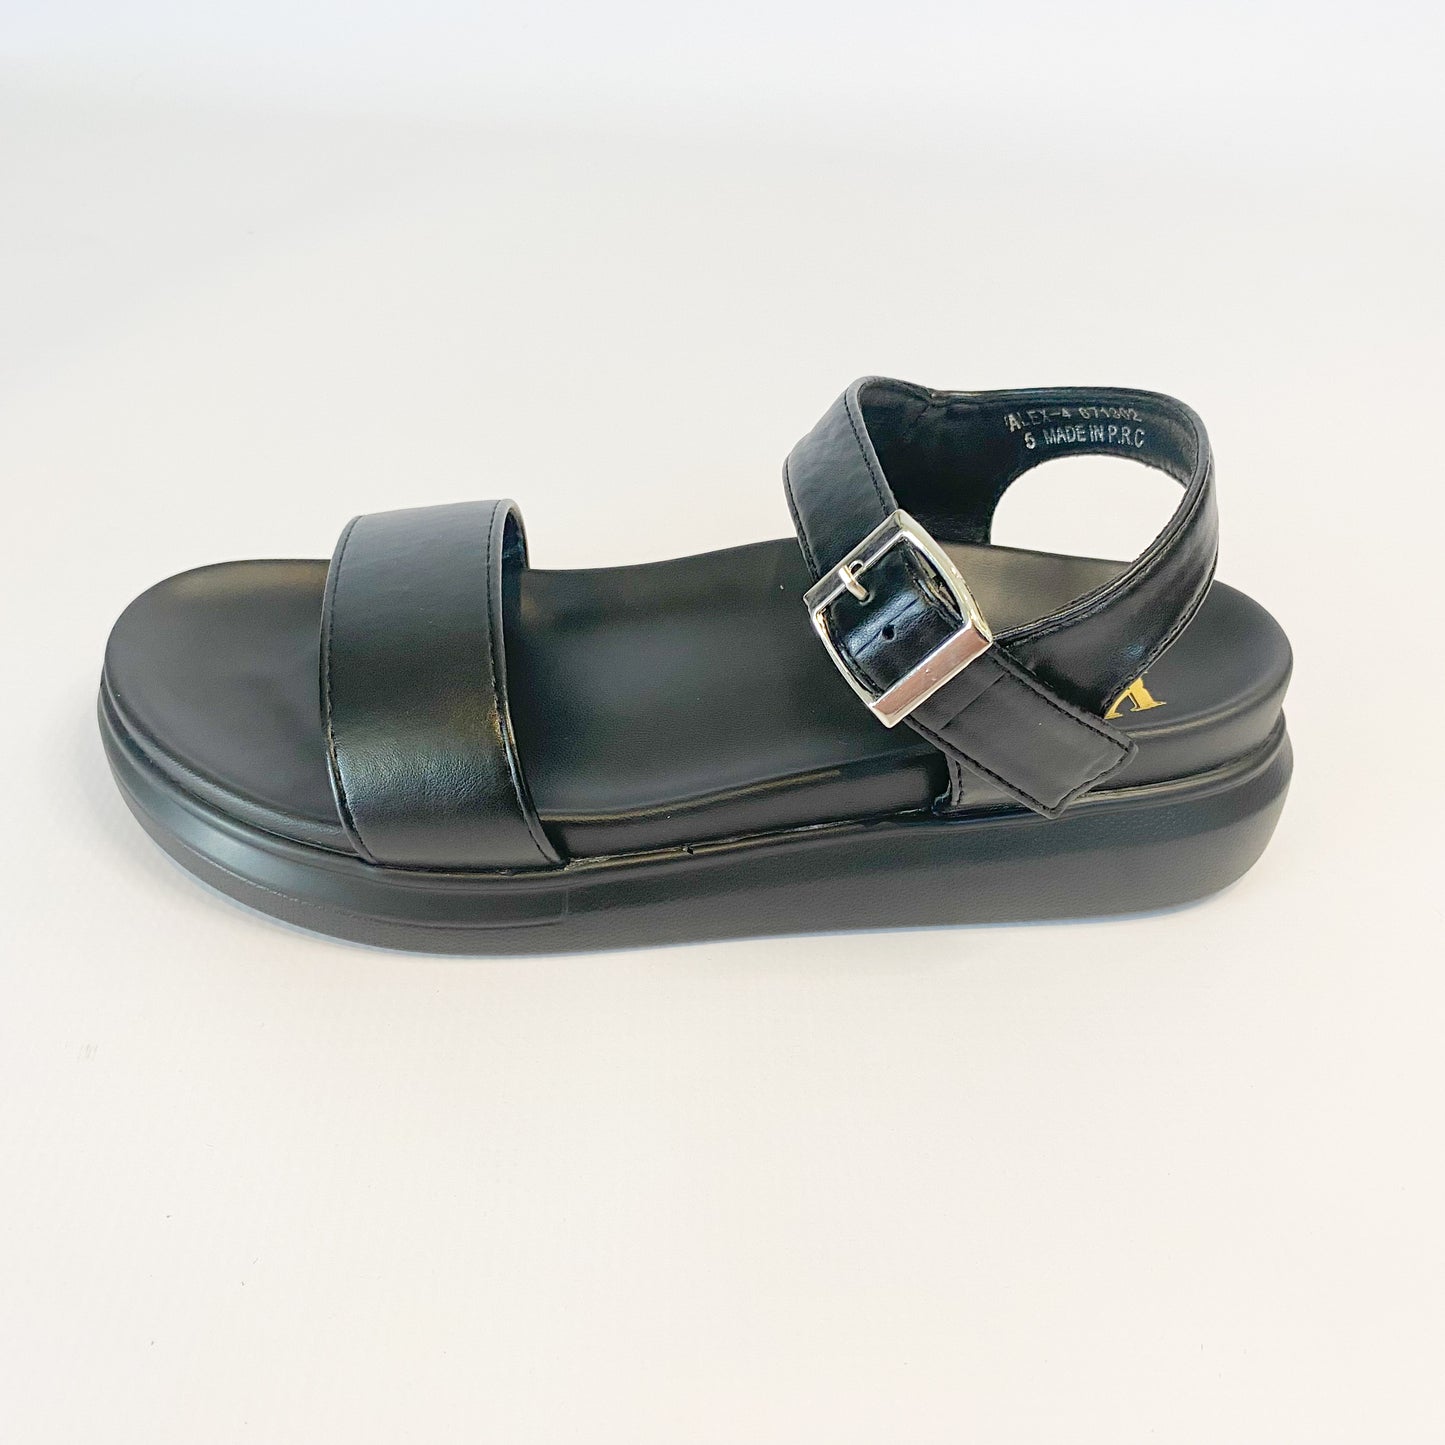 KG black ankle strap sandal